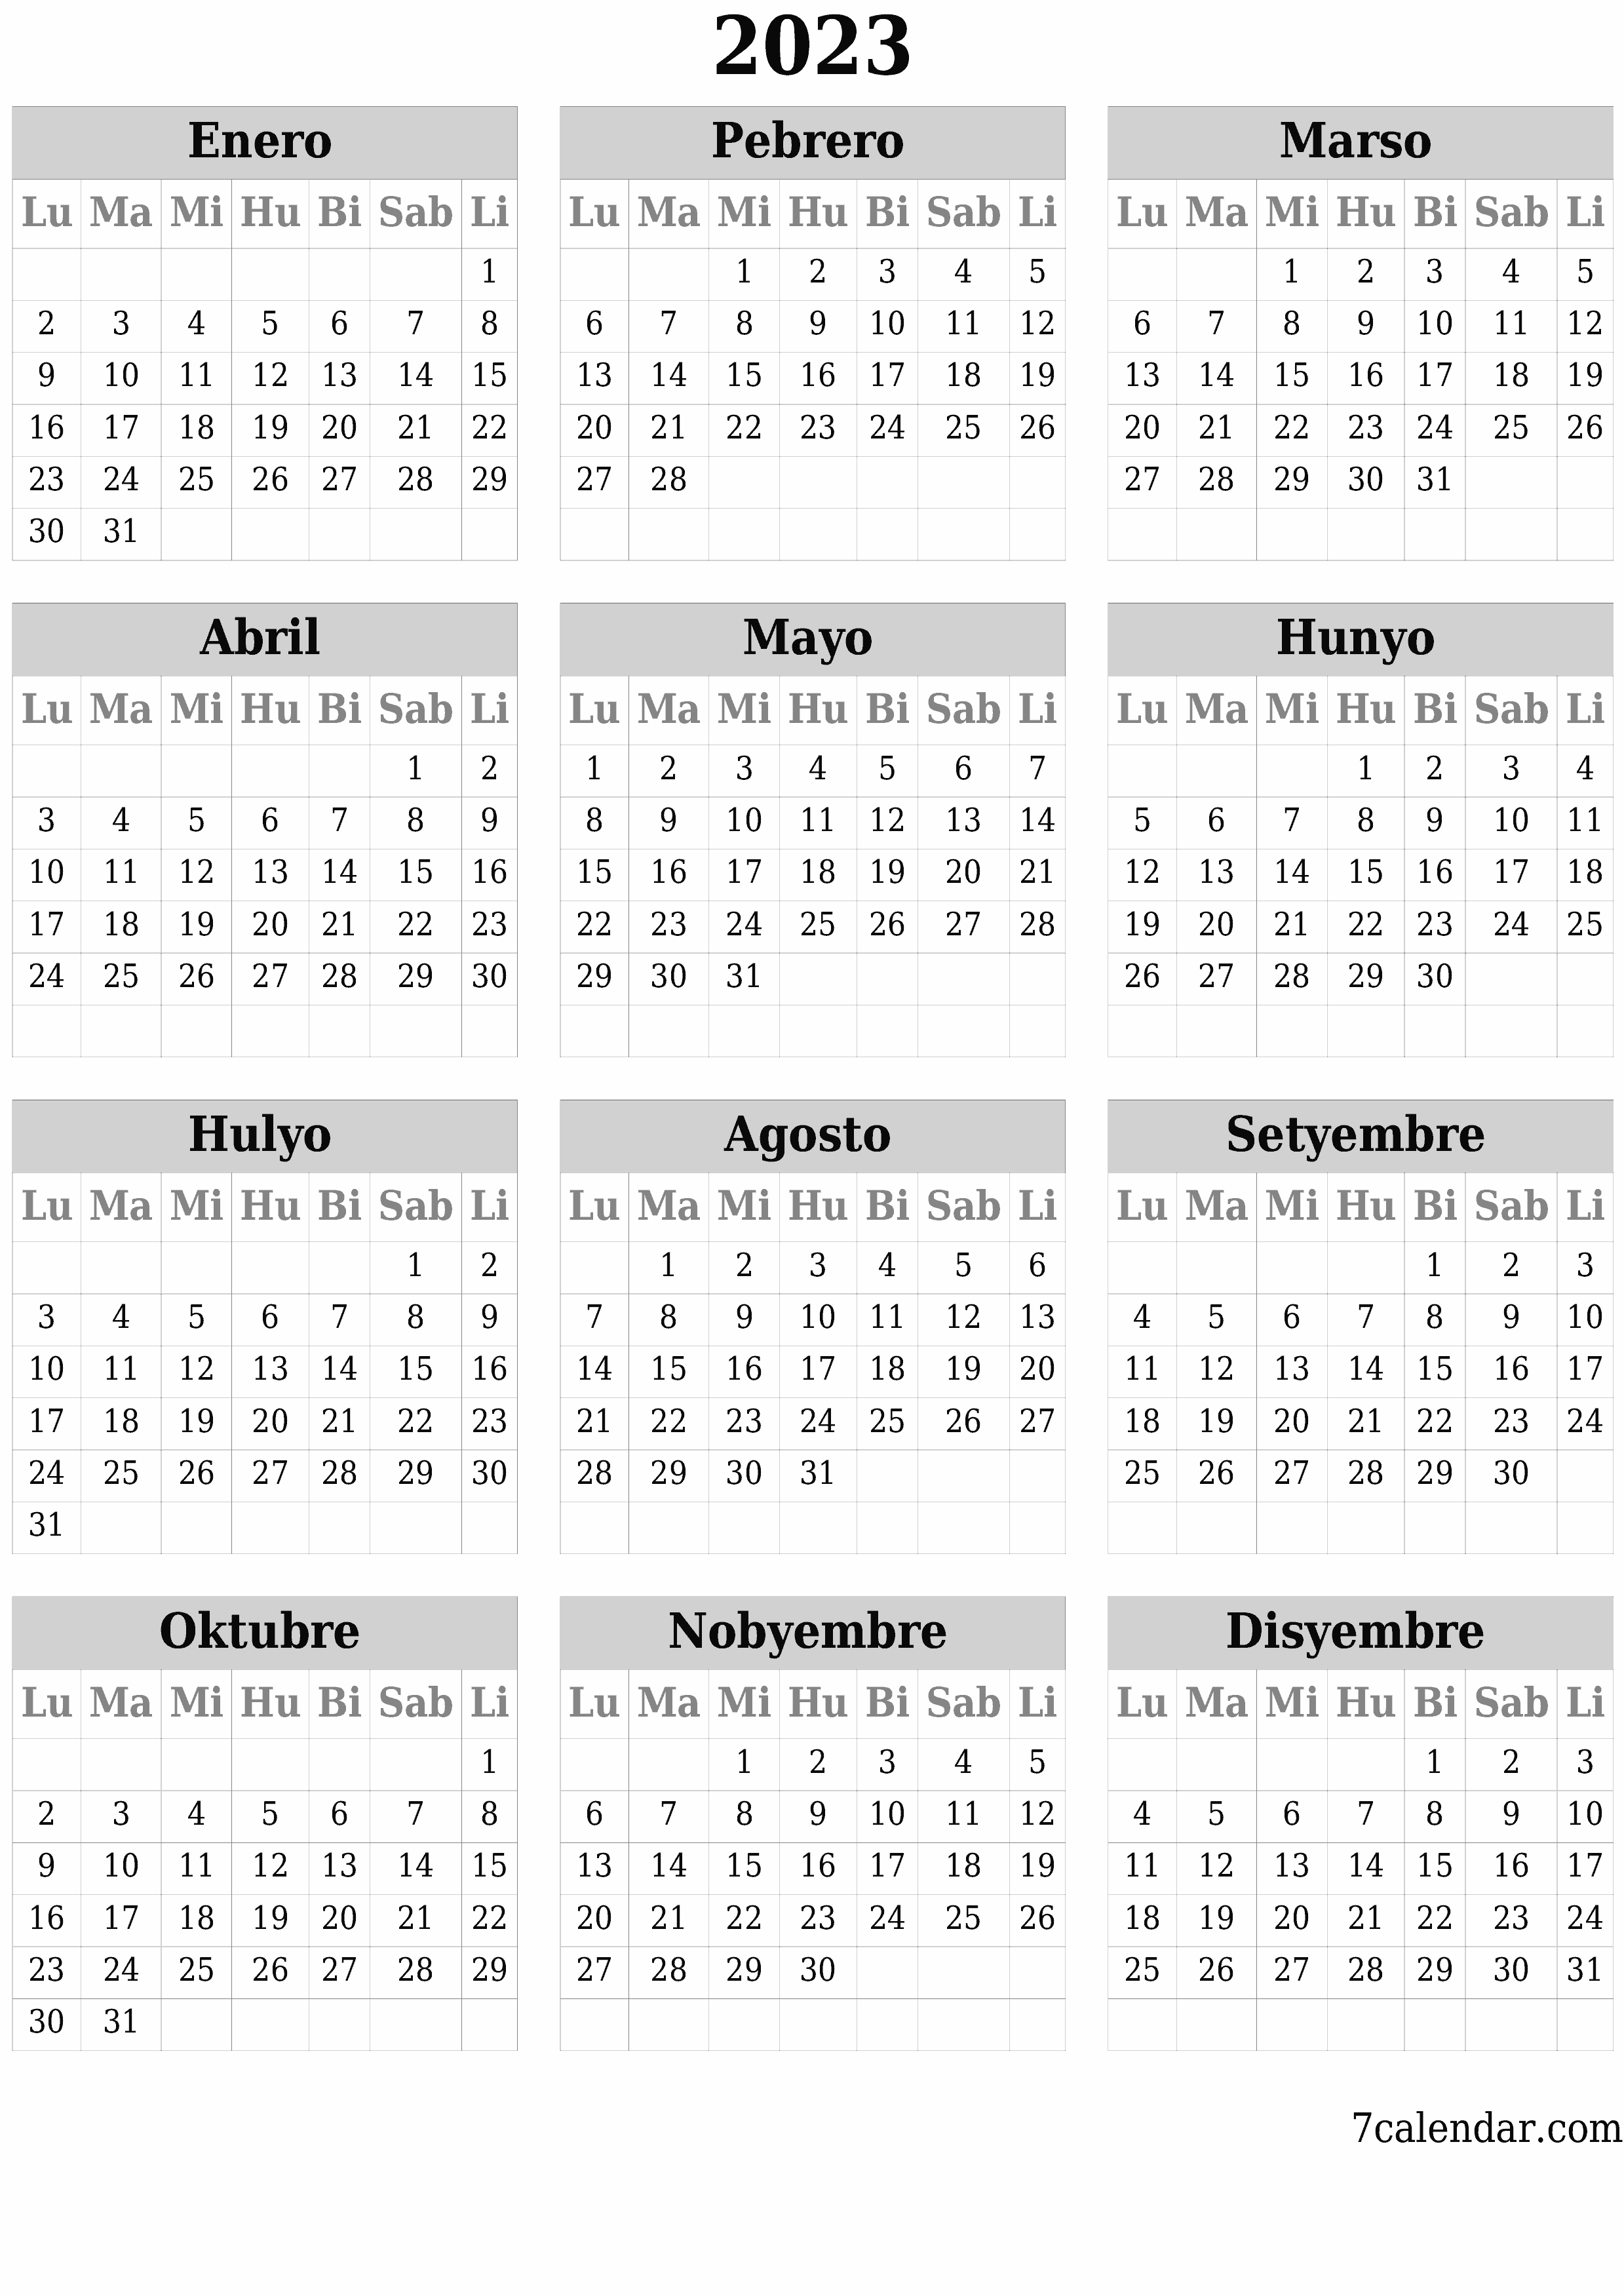 napi-print na sa dingding template ng libreng patayo Taunan kalendaryo Oktubre (Okt) 2023